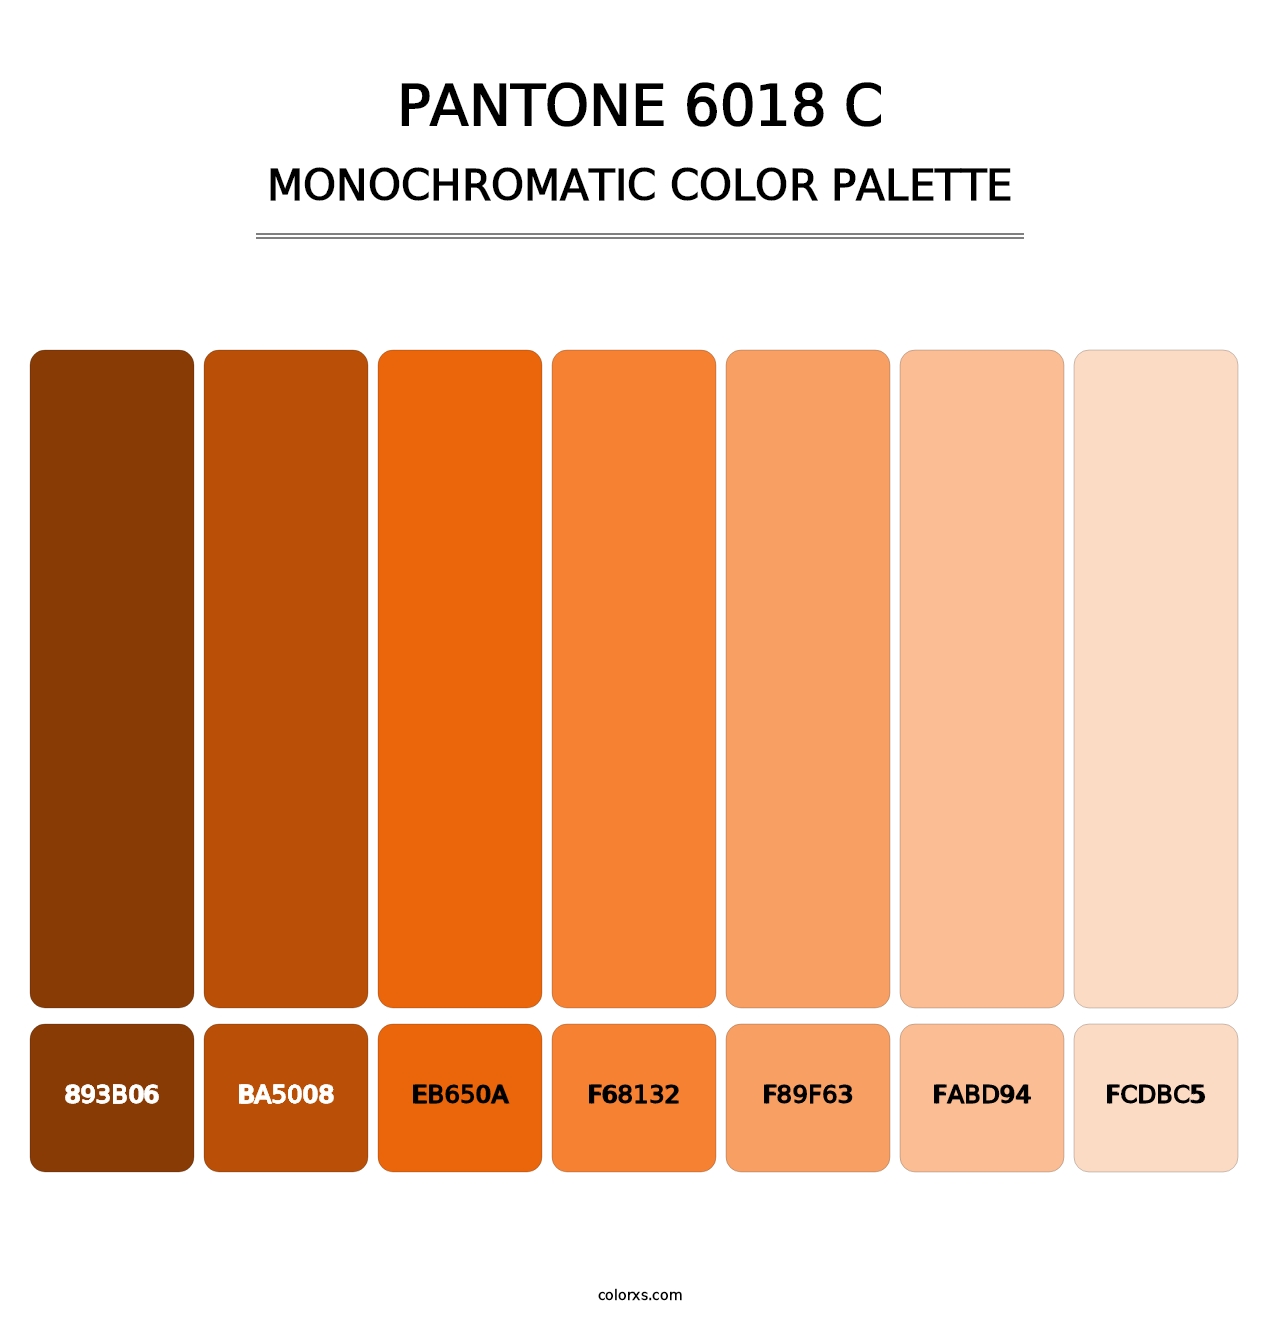 PANTONE 6018 C - Monochromatic Color Palette